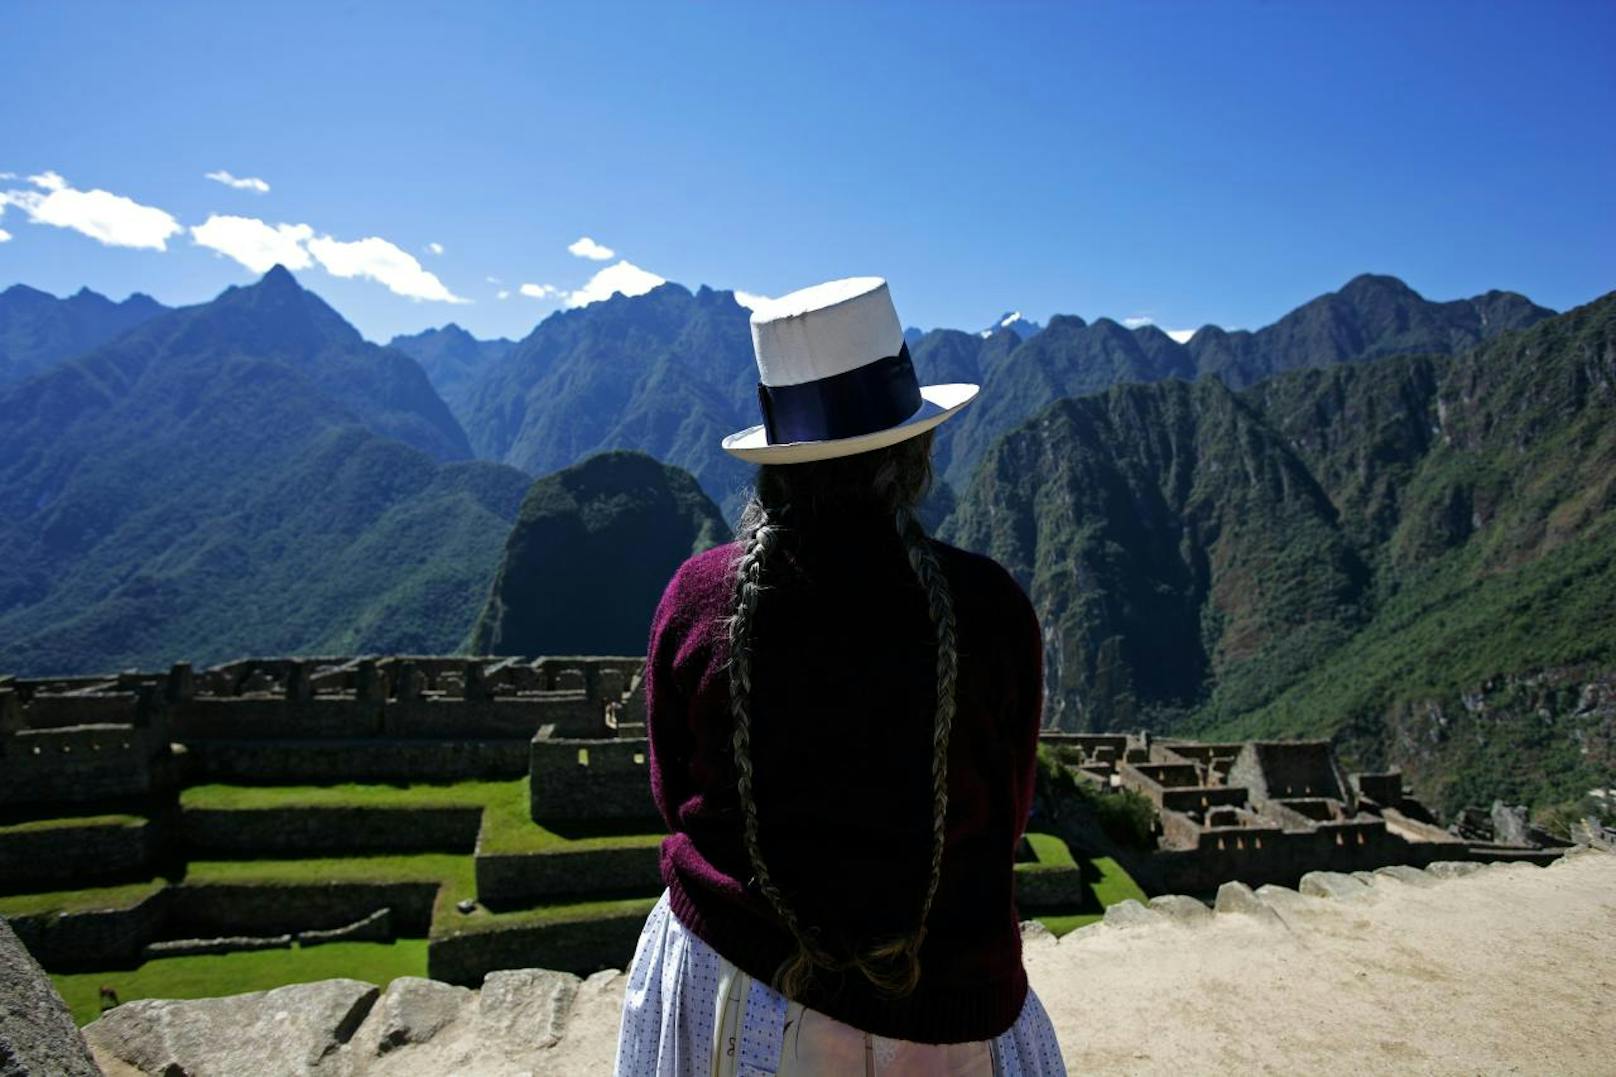 Eingebettet zwischen dicht bewachsenen Bergen, war Machu Picchu für die spanischen Eroberer im Jahre 1532 unsichtbar und ist dadurch der Zerstörung entgangen.